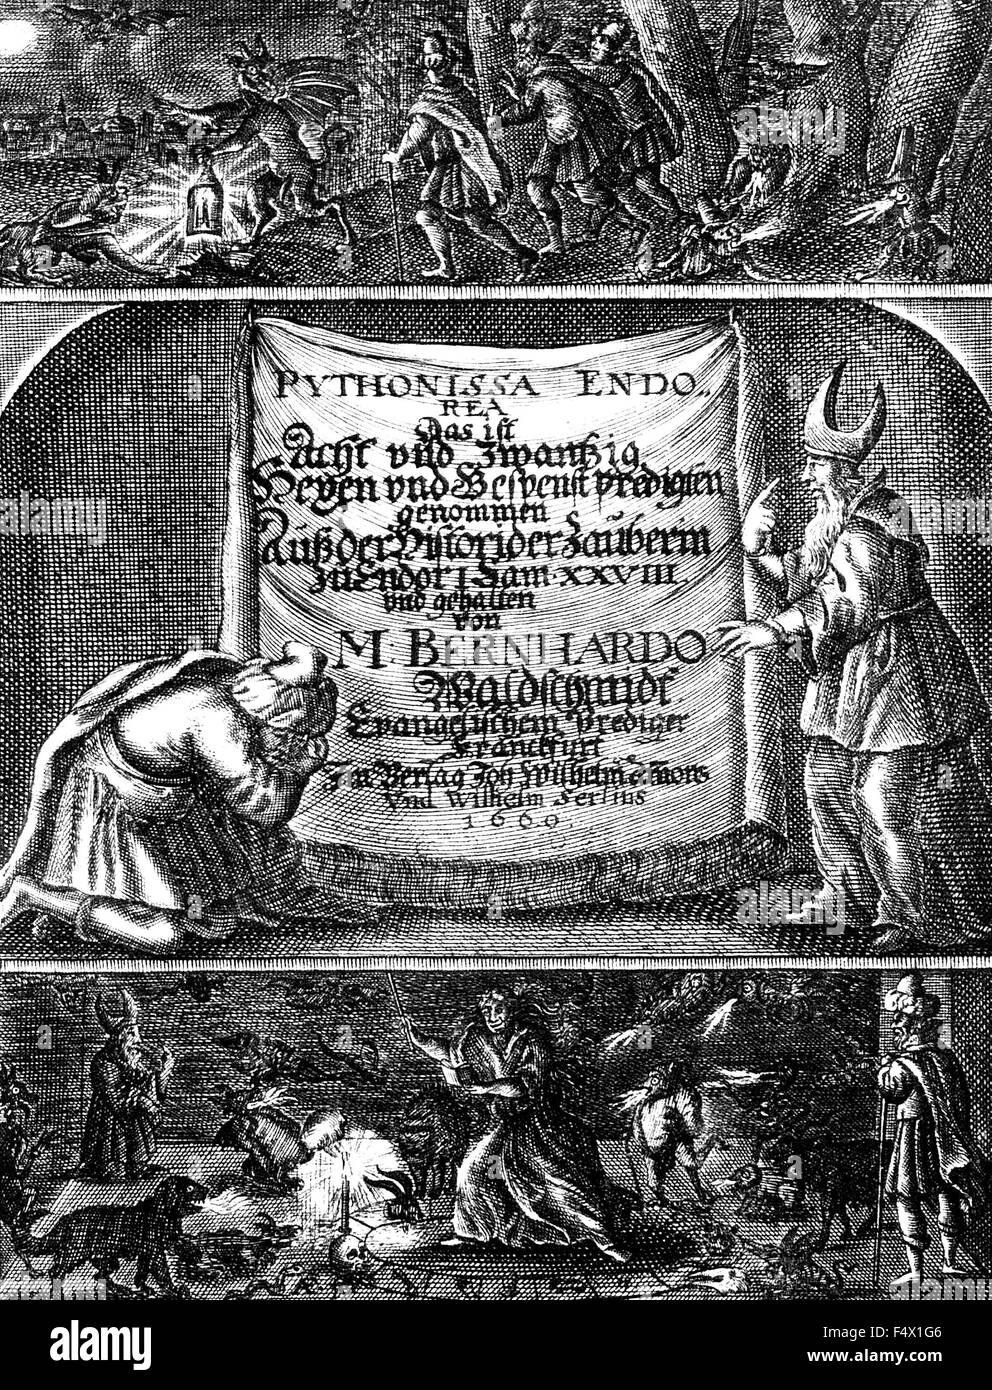 BERNHARD WALDSCHMIDT (1608-1665) pastore luterano. Titolo pagina del suo 1660 prenota Pythonissa Endorea.... sulla stregoneria Foto Stock